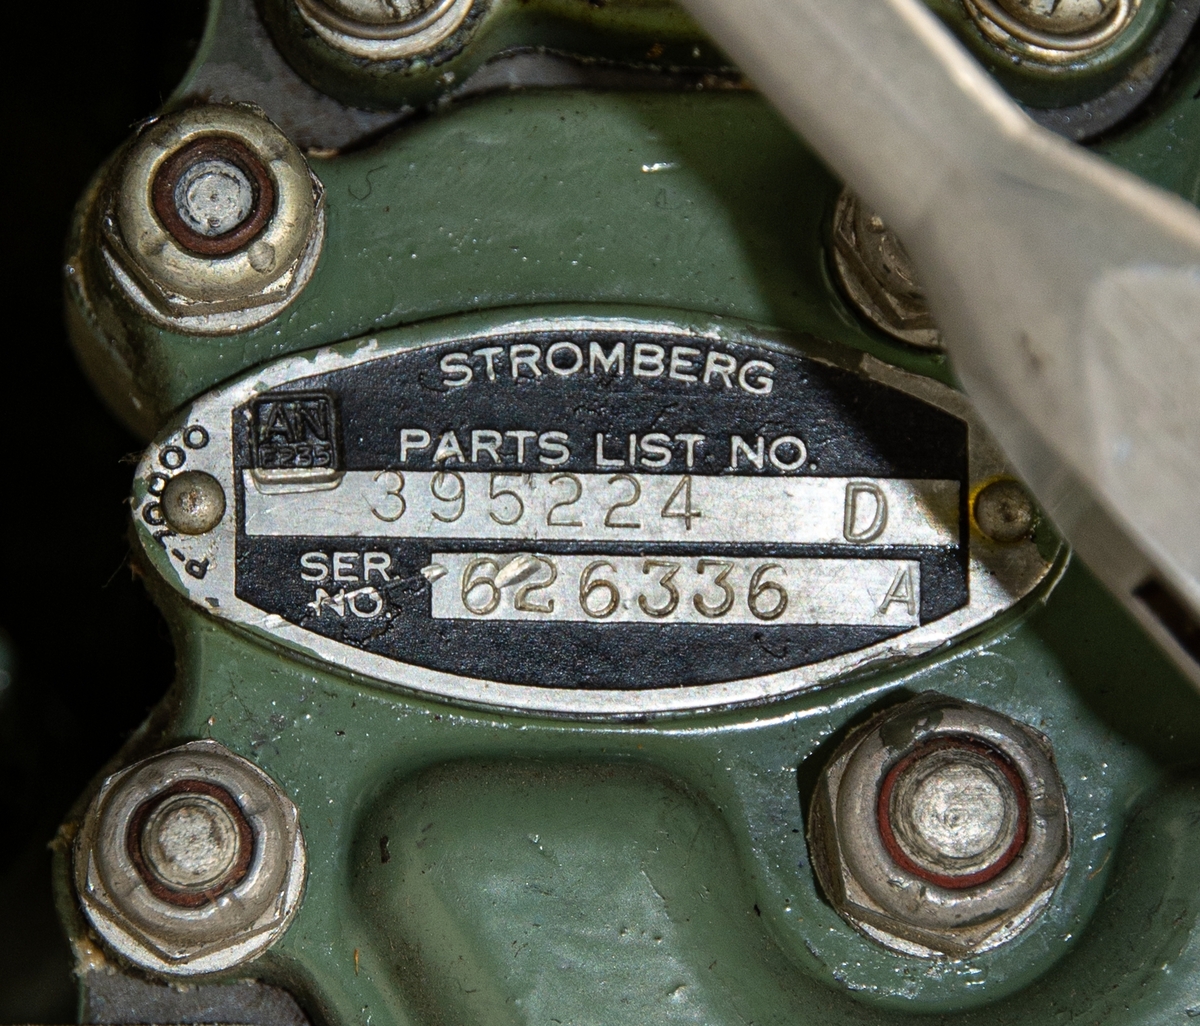 Förgasare Stromberg Bendix tillverkad i USA, modell PD18A1 till motor PM7 som användes i J 26 Mustang. Grönmålad. Följesedel ingår.